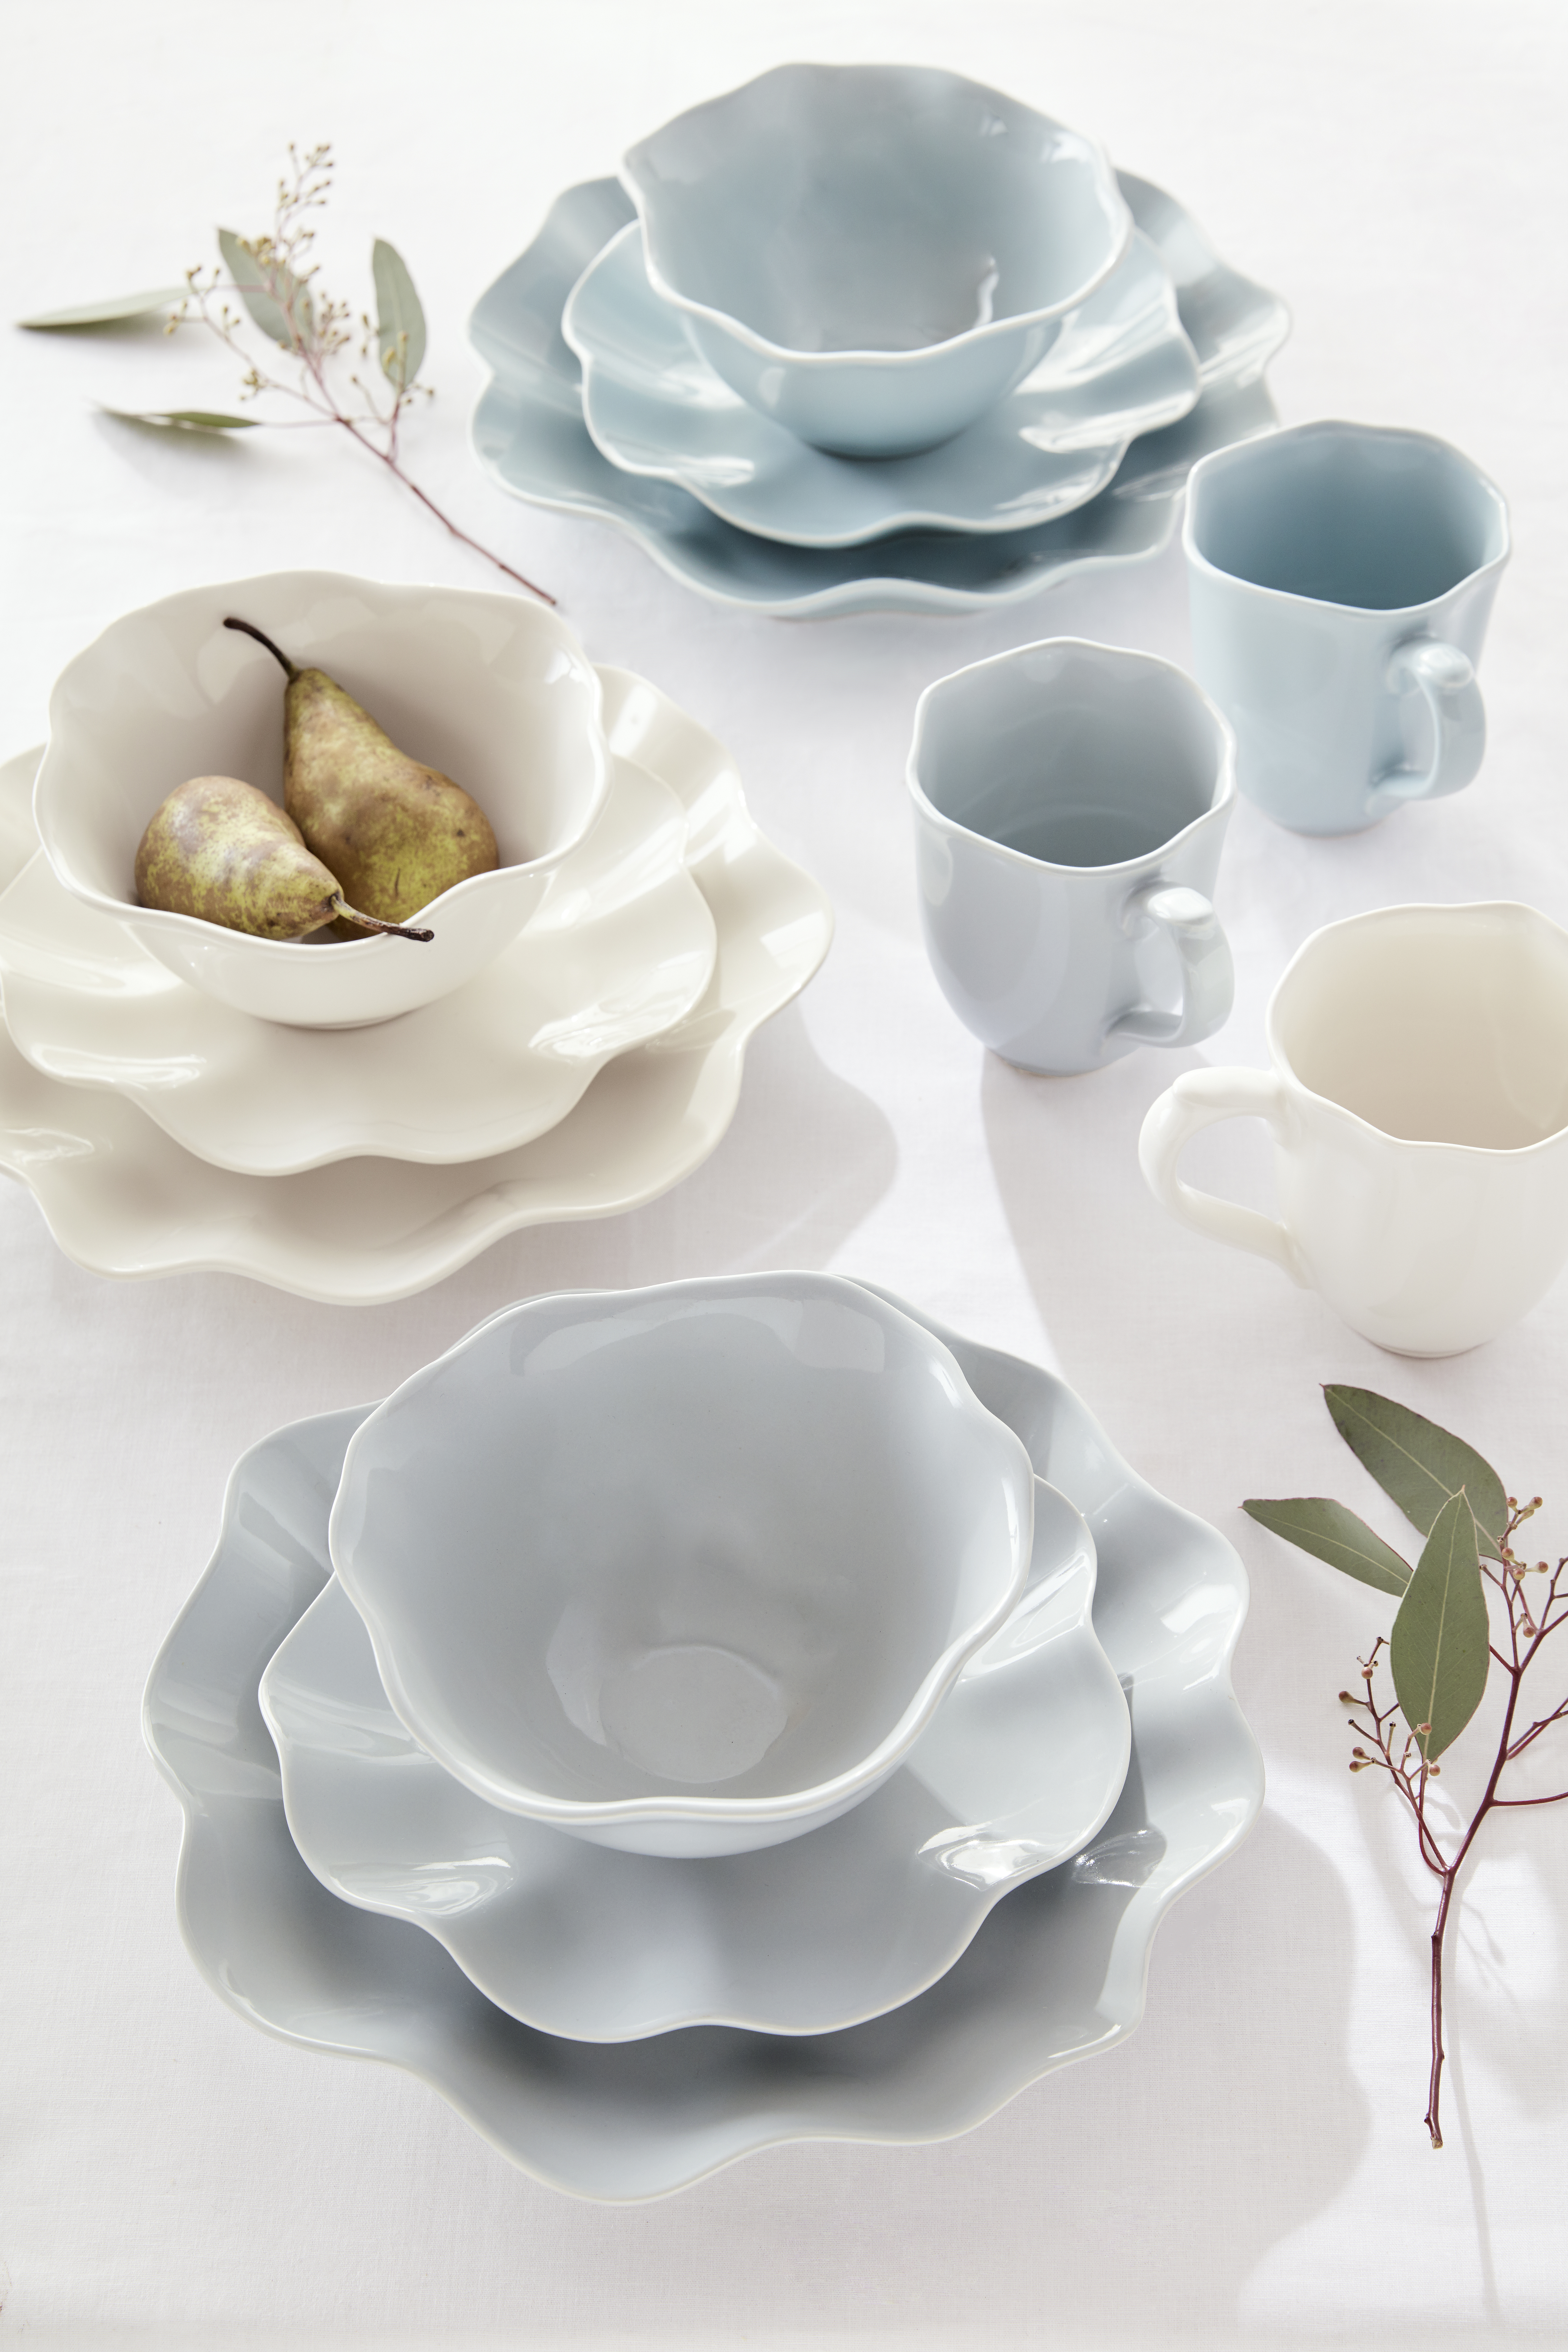 Sophie Conran Floret bowl, Cream image number null